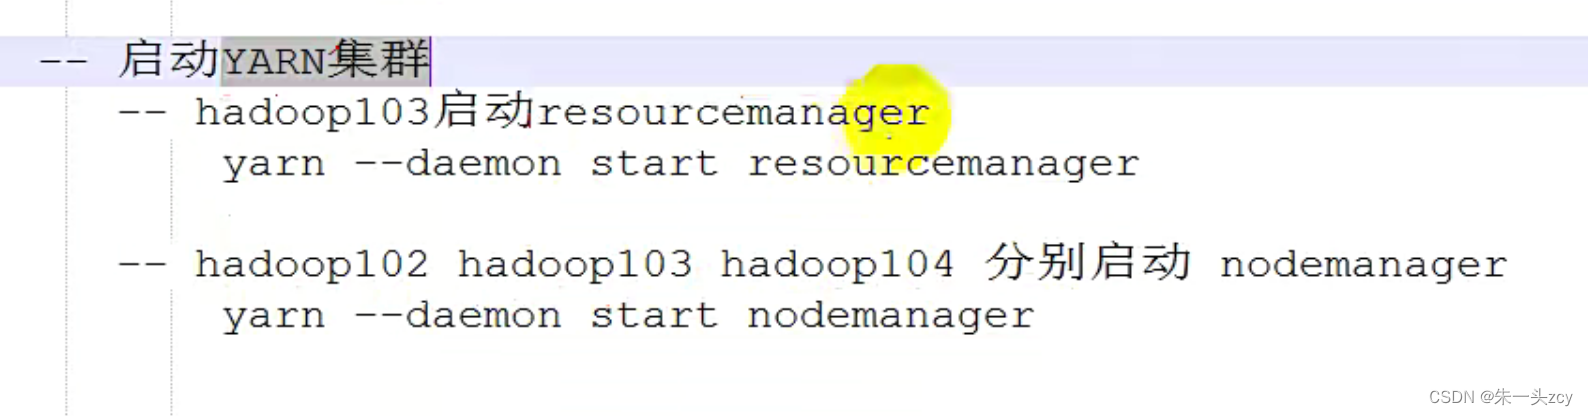 搭建Hadoop集群(完全分布式运行模式)